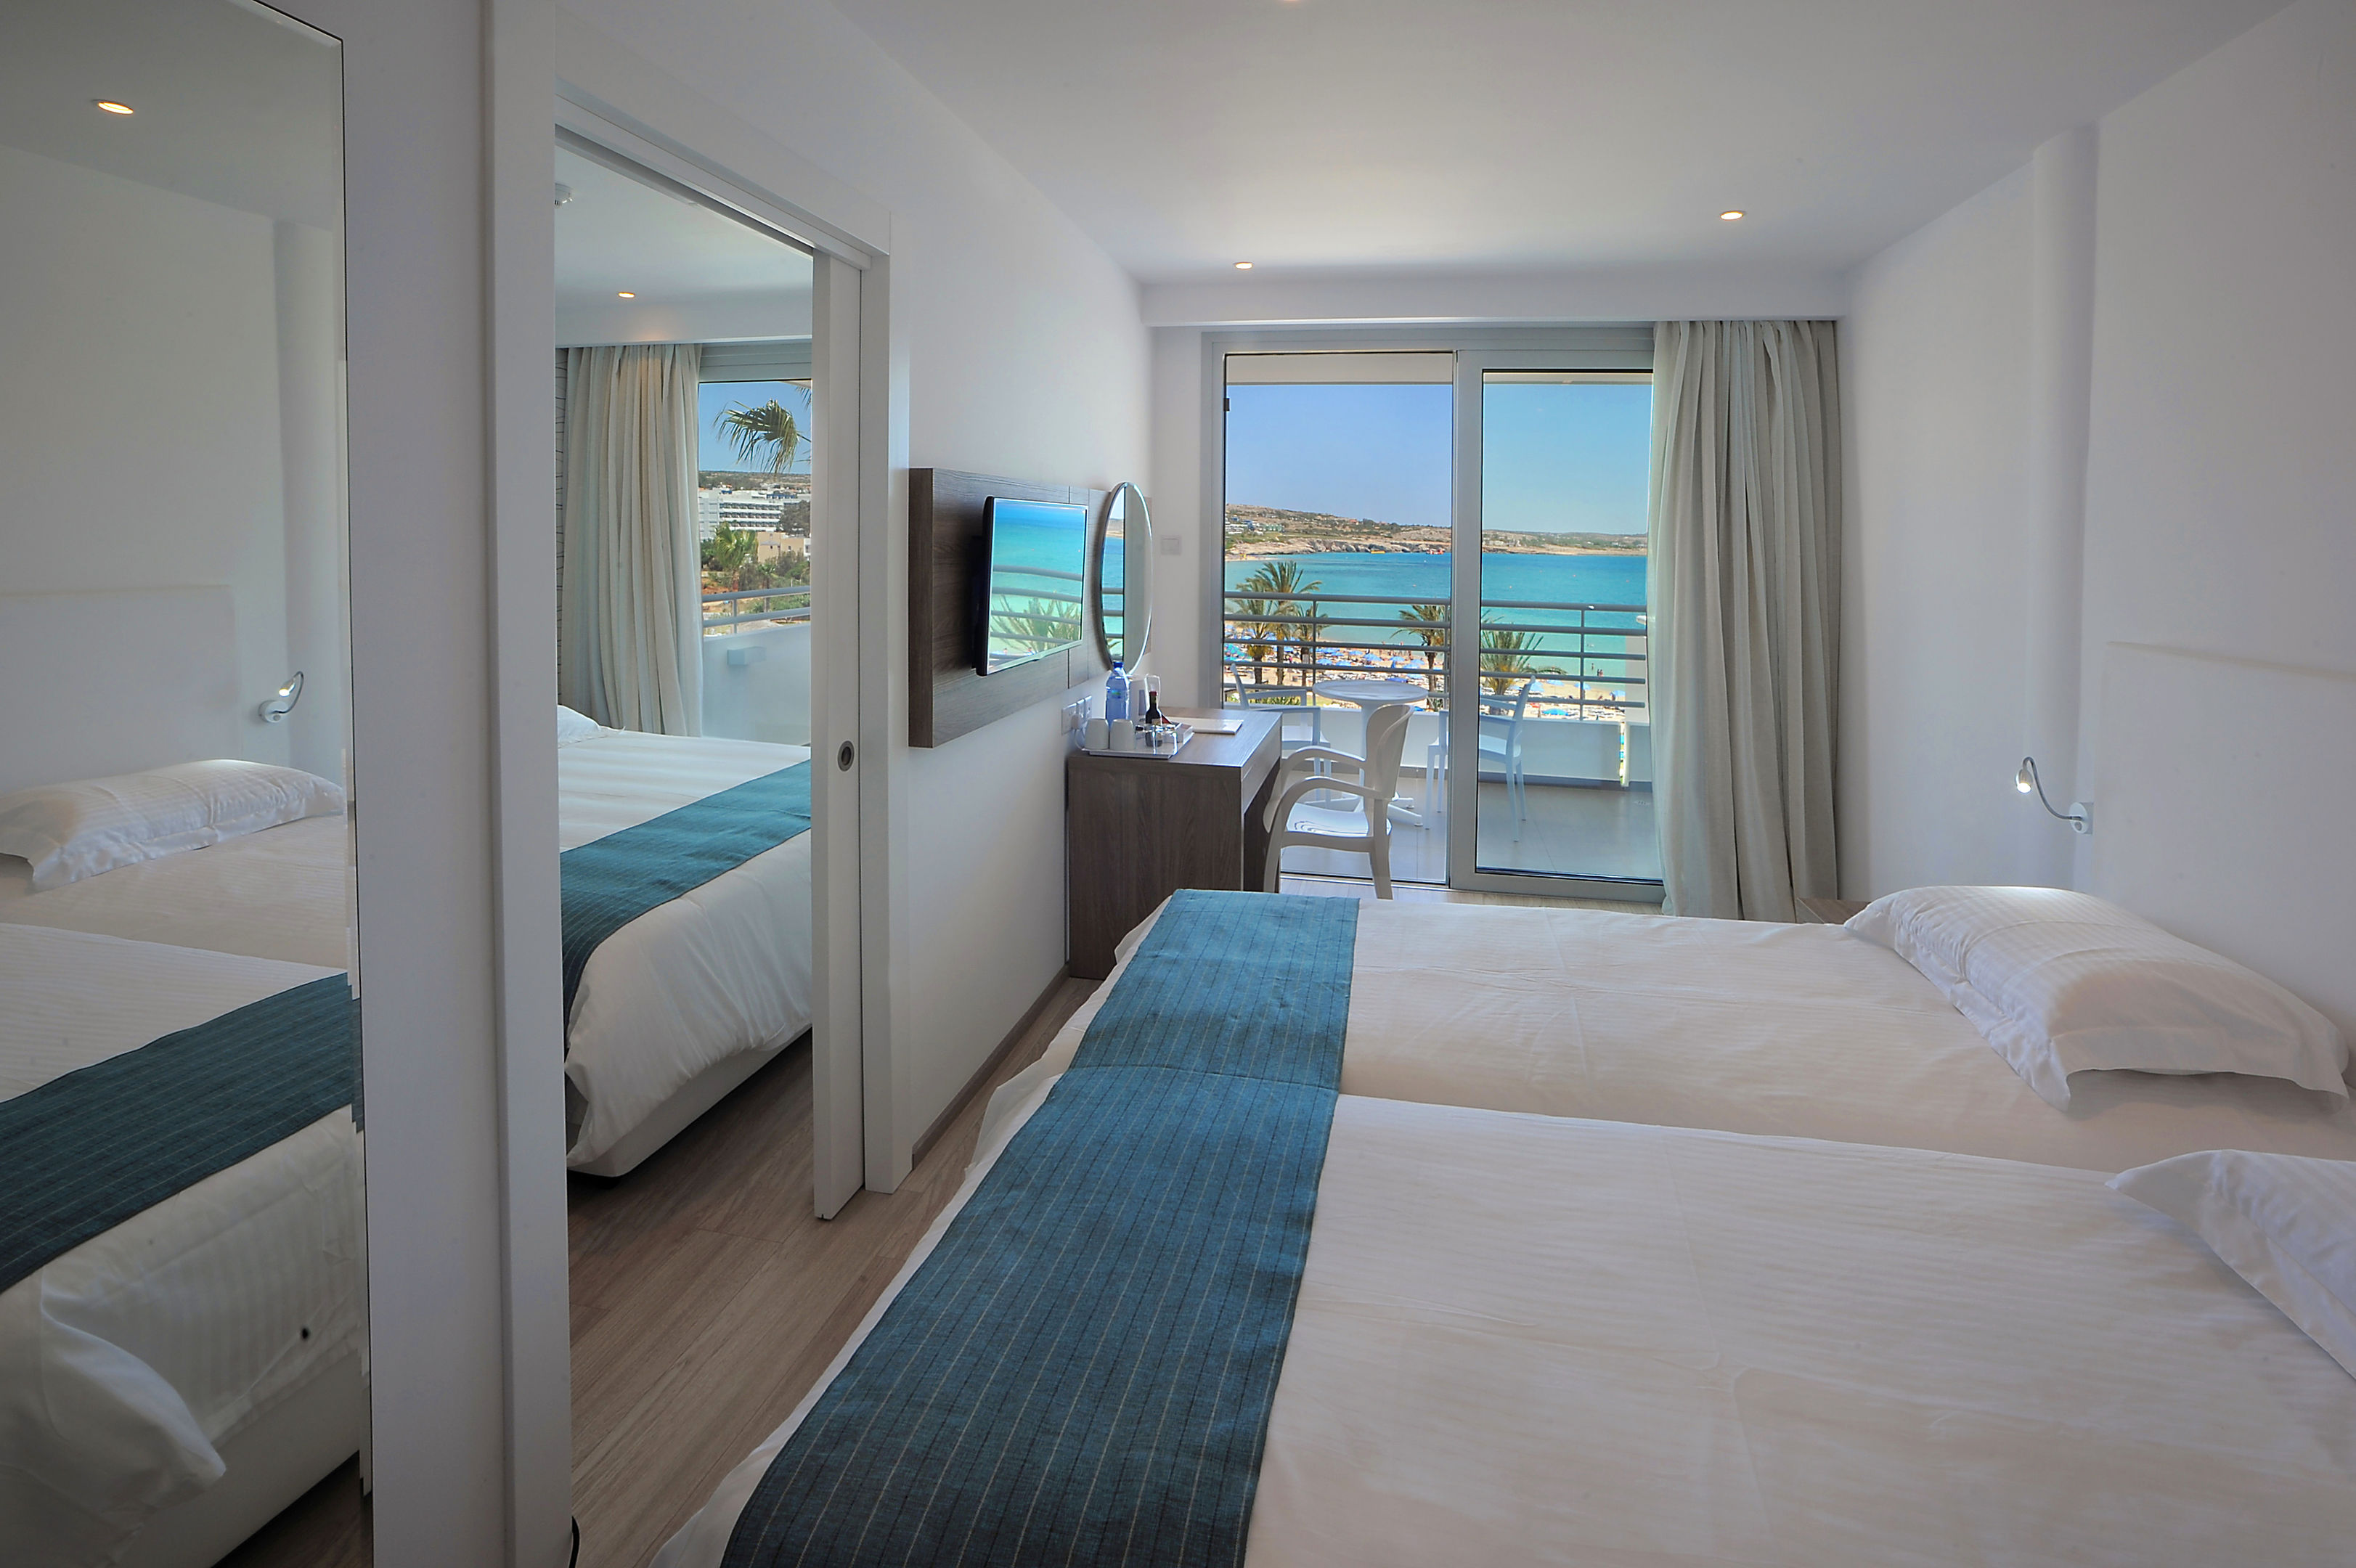 Okeanos Beach Hotel